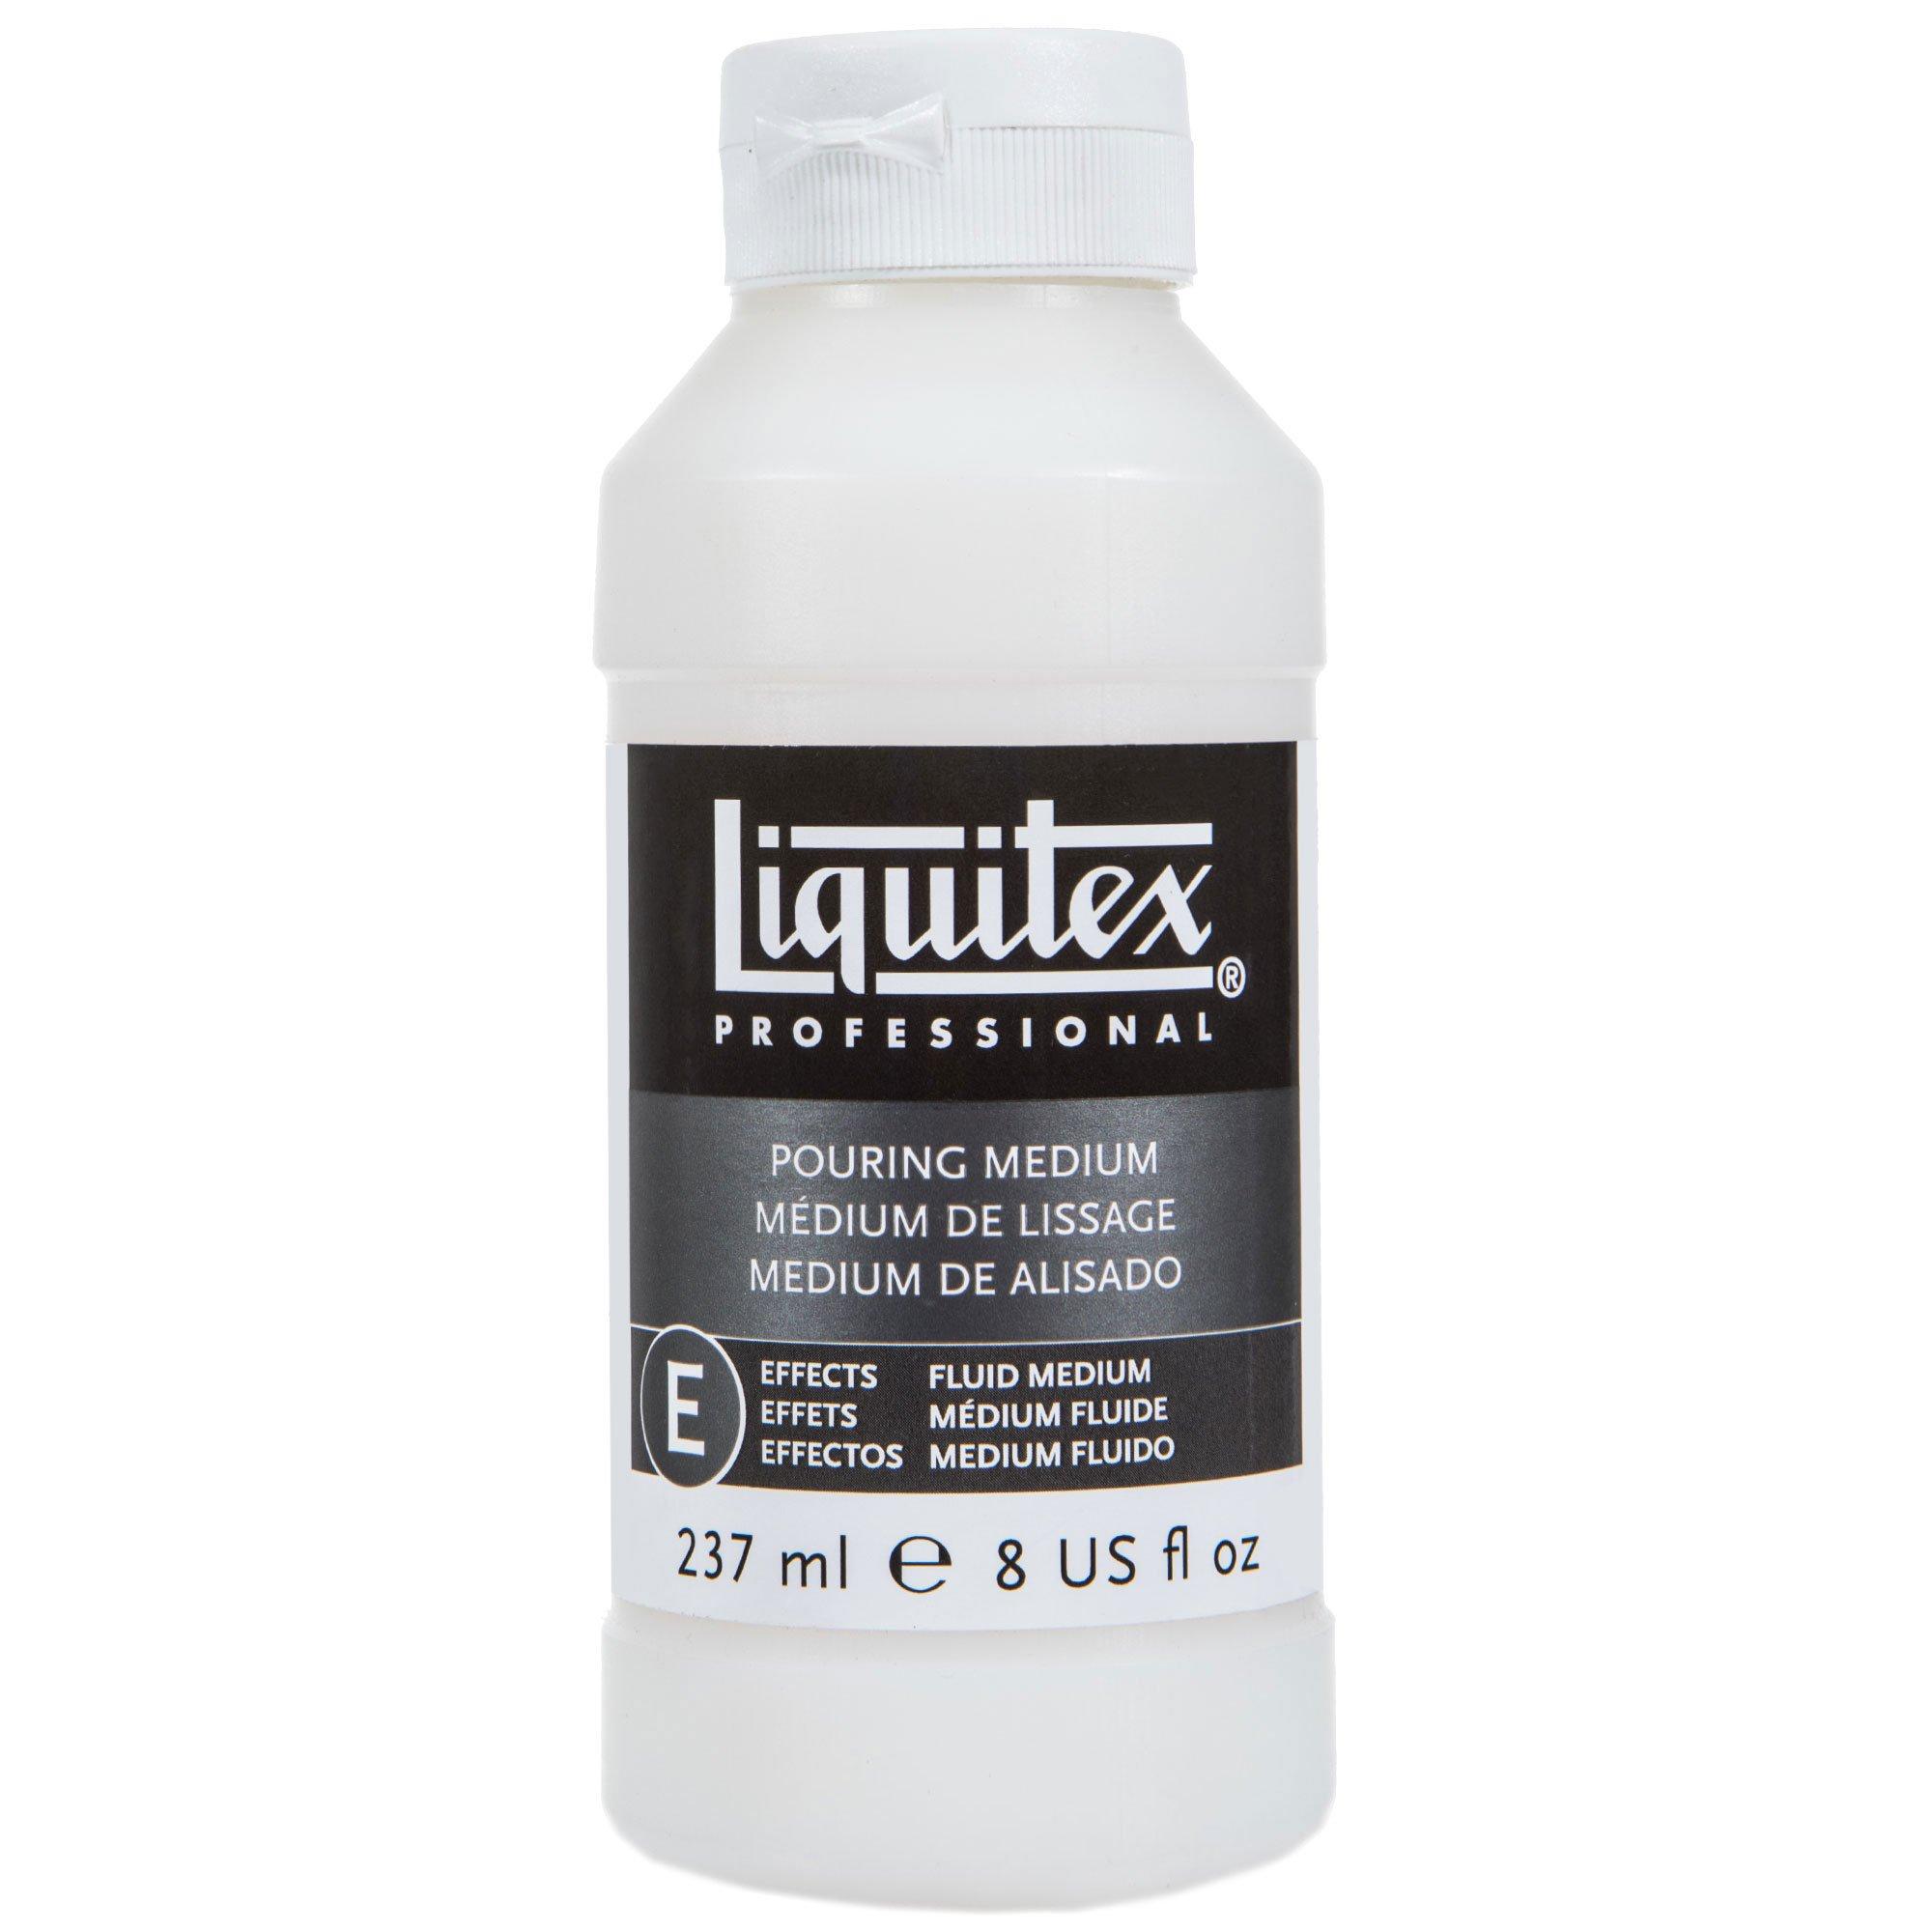 Liquitex Basics Acrylic Paint, Hobby Lobby, 577825